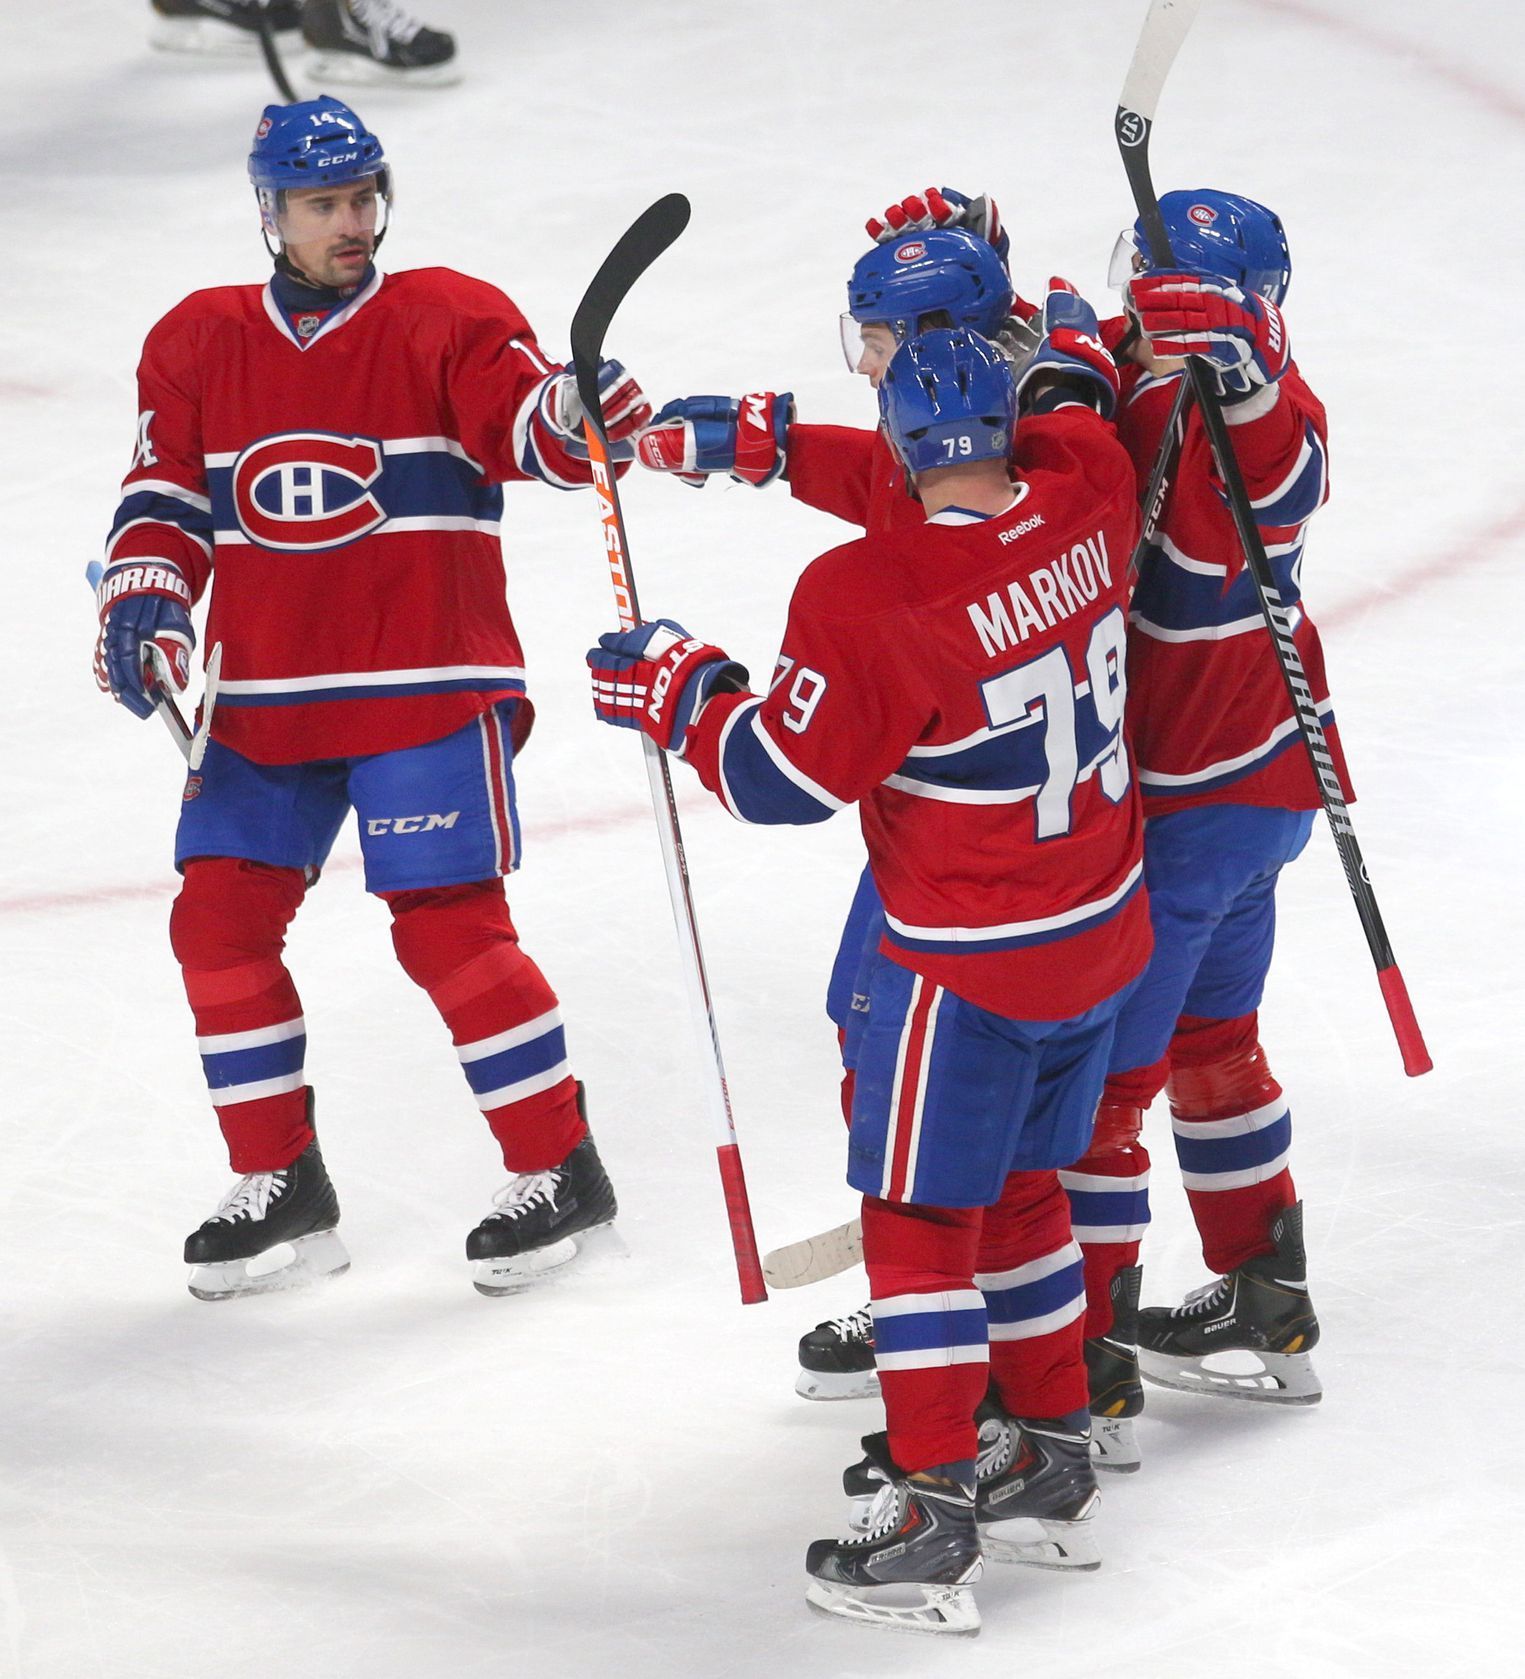 NHL: Toronto Maple Leafs vs. Montreal Canadiens (Markov, Plekanec)